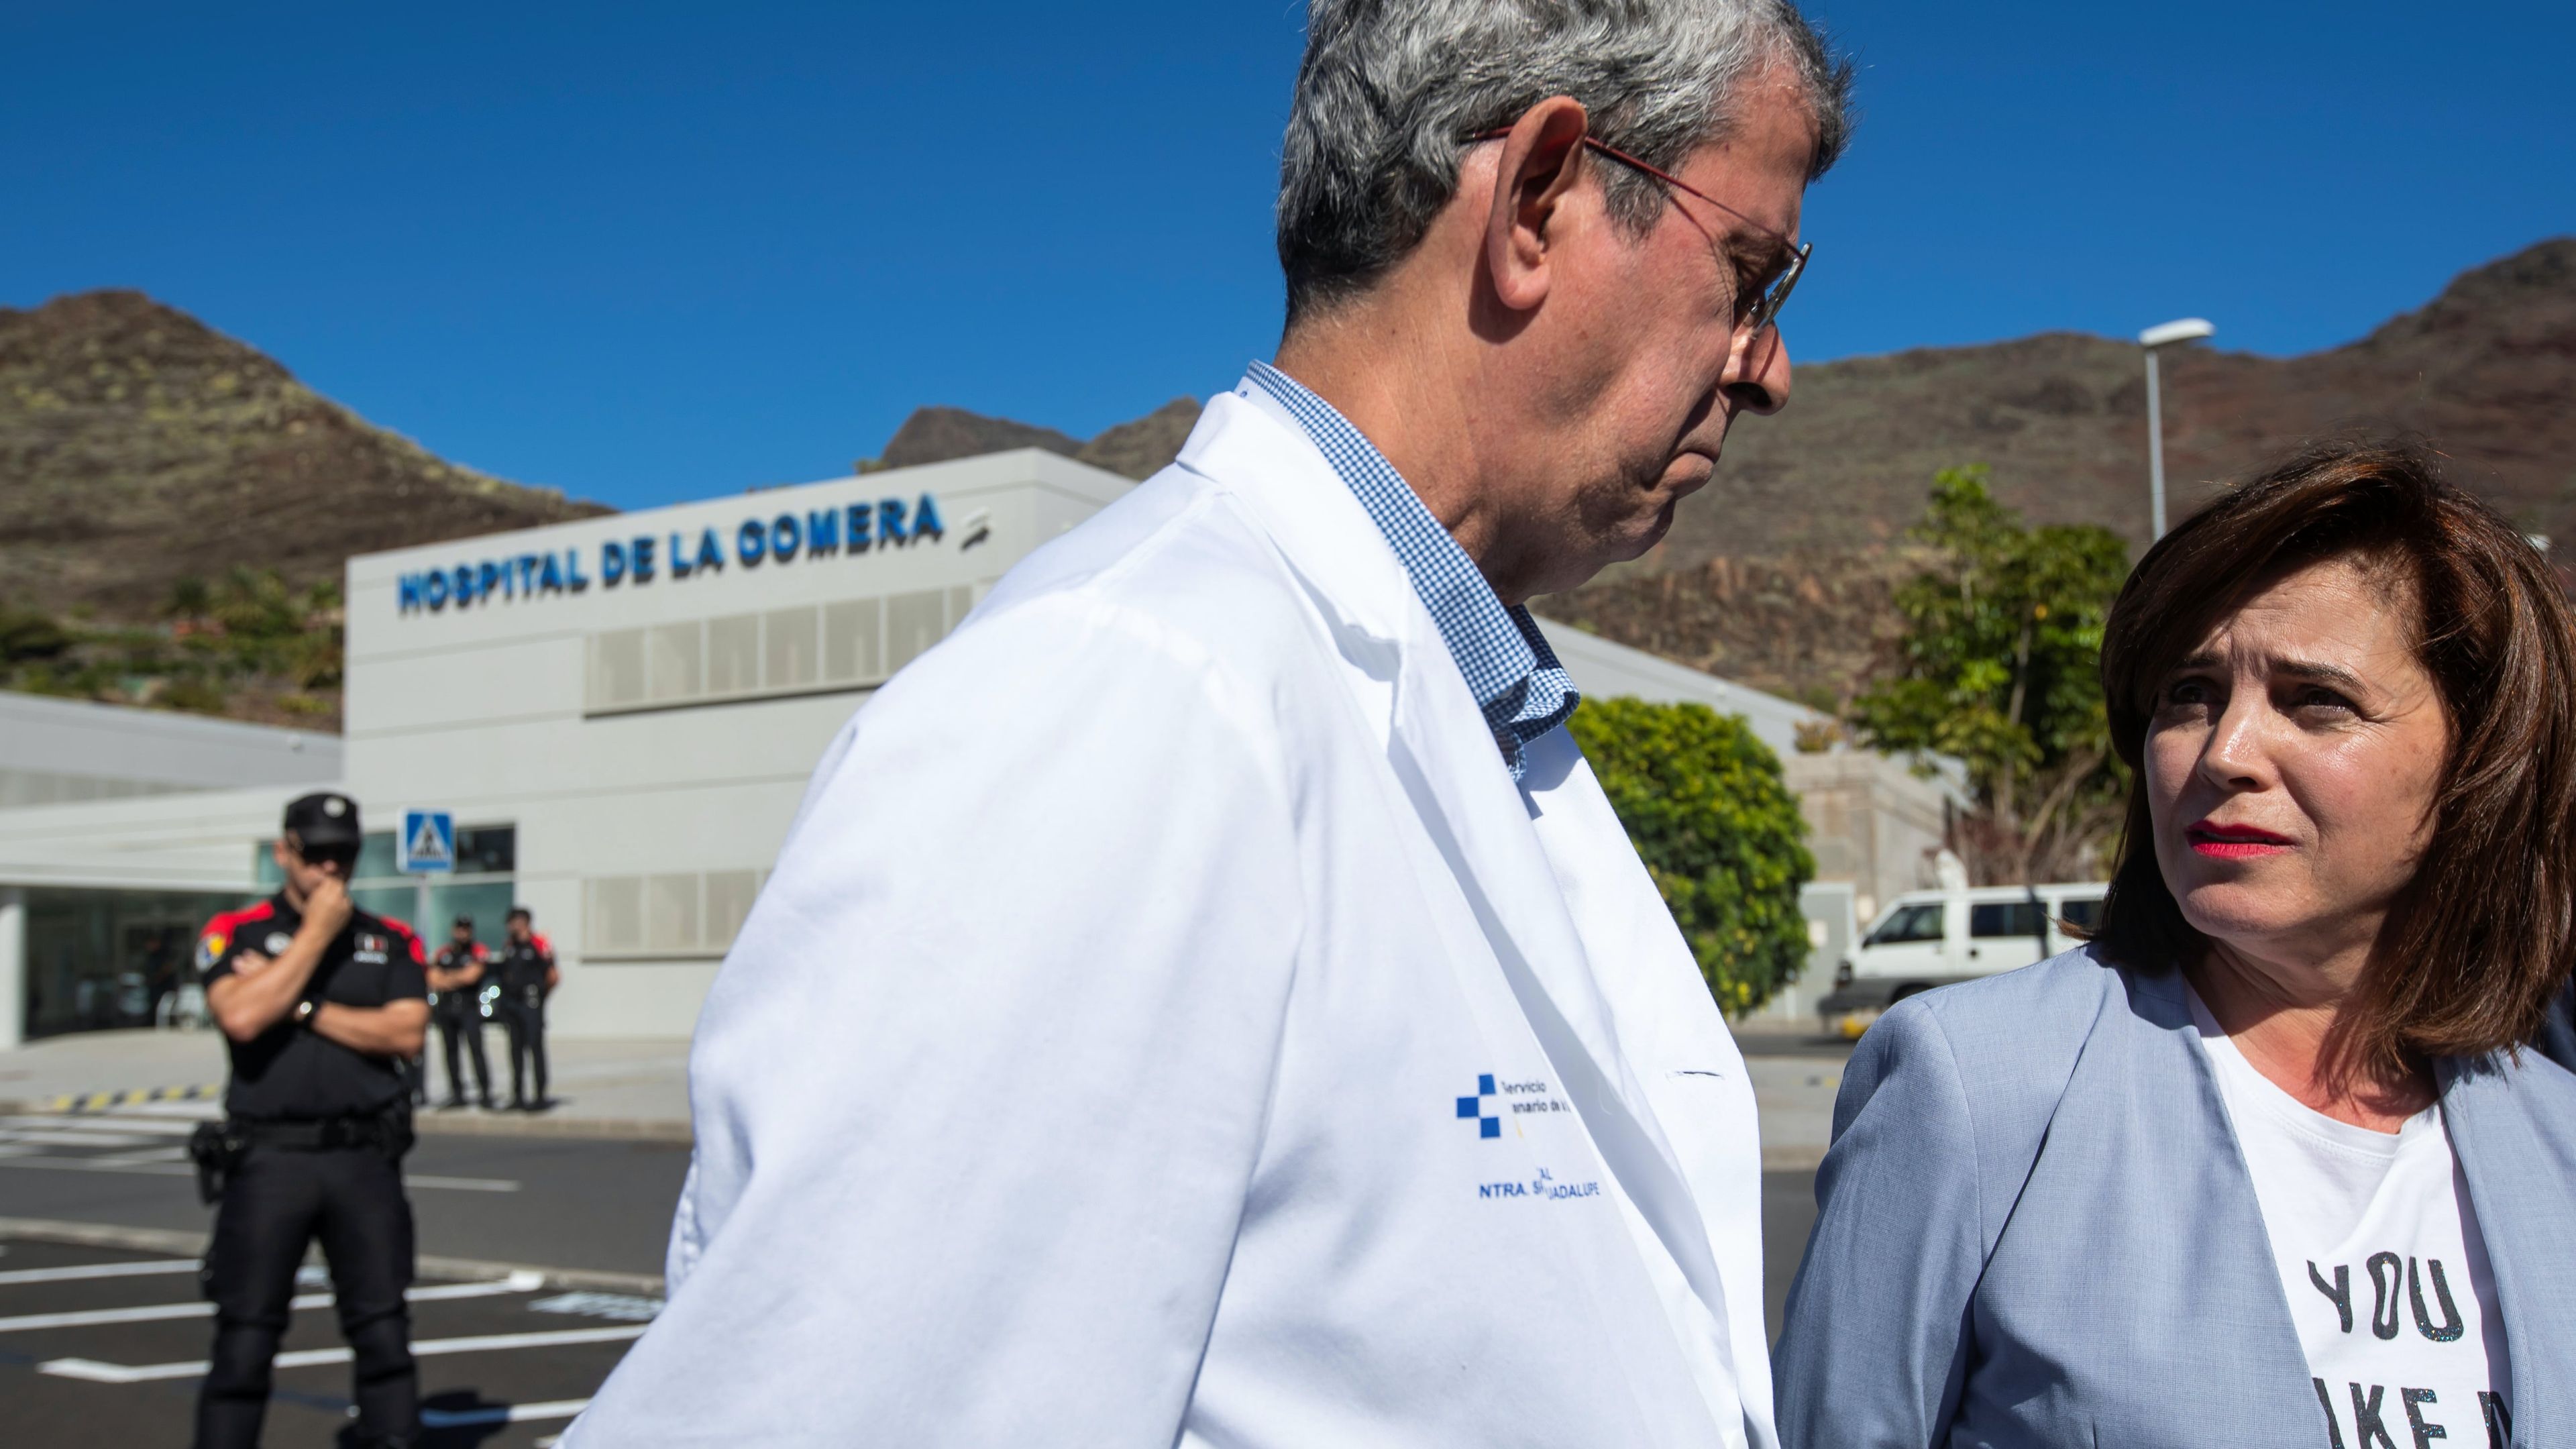 Médicos y miembros del Gobierno canario hablan a las afueras del hospital de La Gomera, donde se detectó uno de los primeros casos de COVID-19 en España.